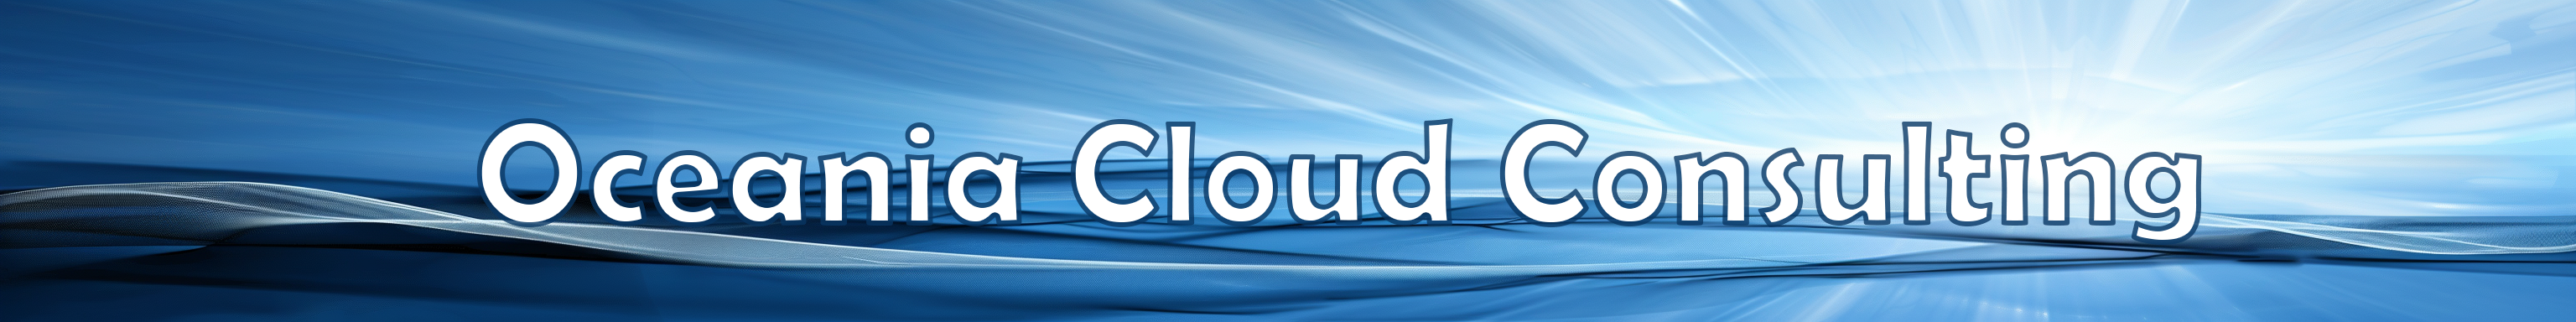 Oceania Cloud Consulting Logo